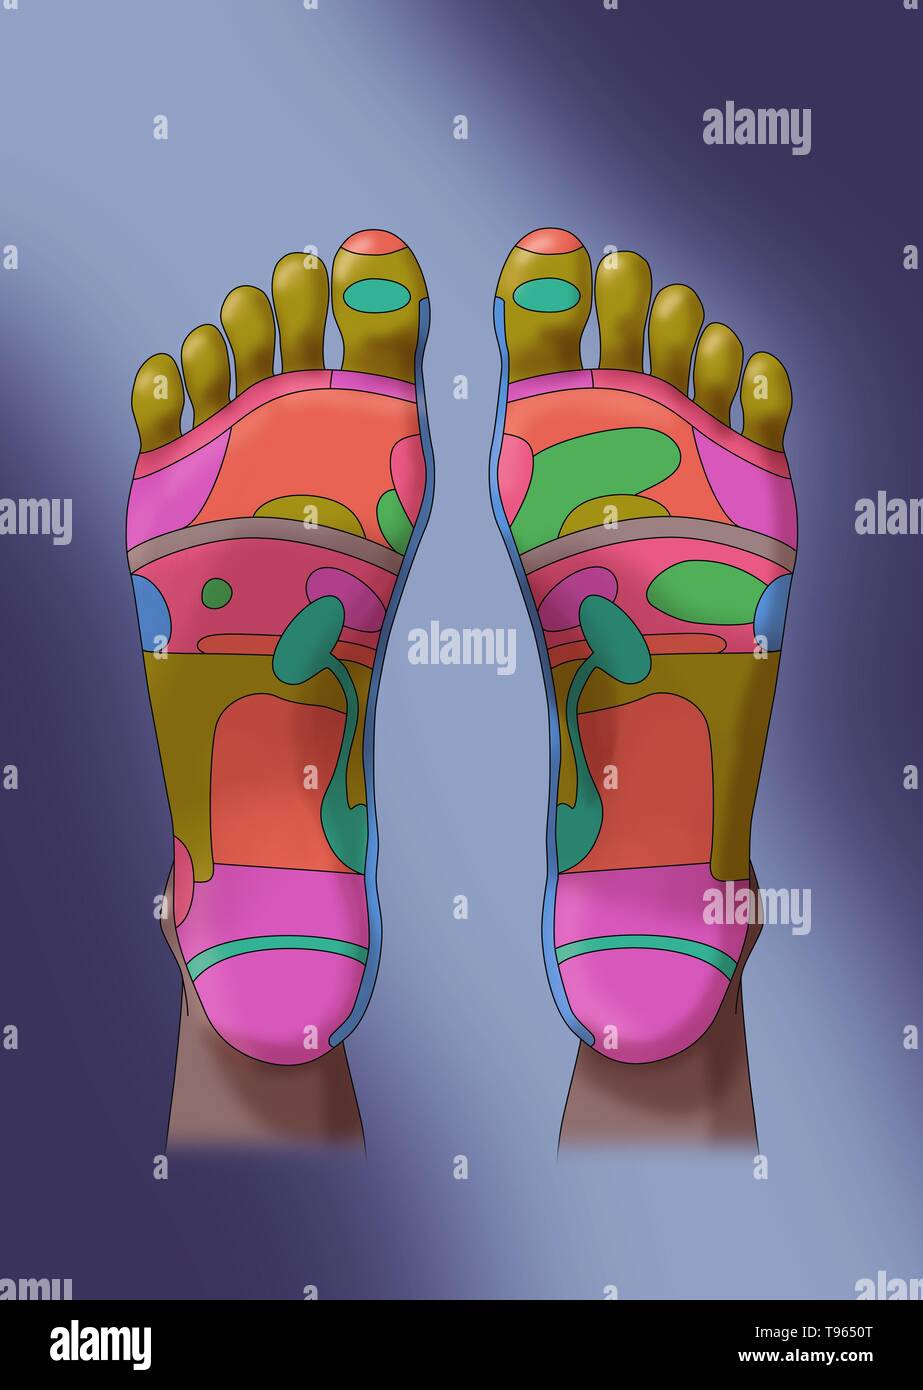 Ilustración de los pies, mostrando las zonas reflejas del pie. La  reflexología de los pies es una forma de medicina alternativa en las zonas  de los pies se cree que corresponden a